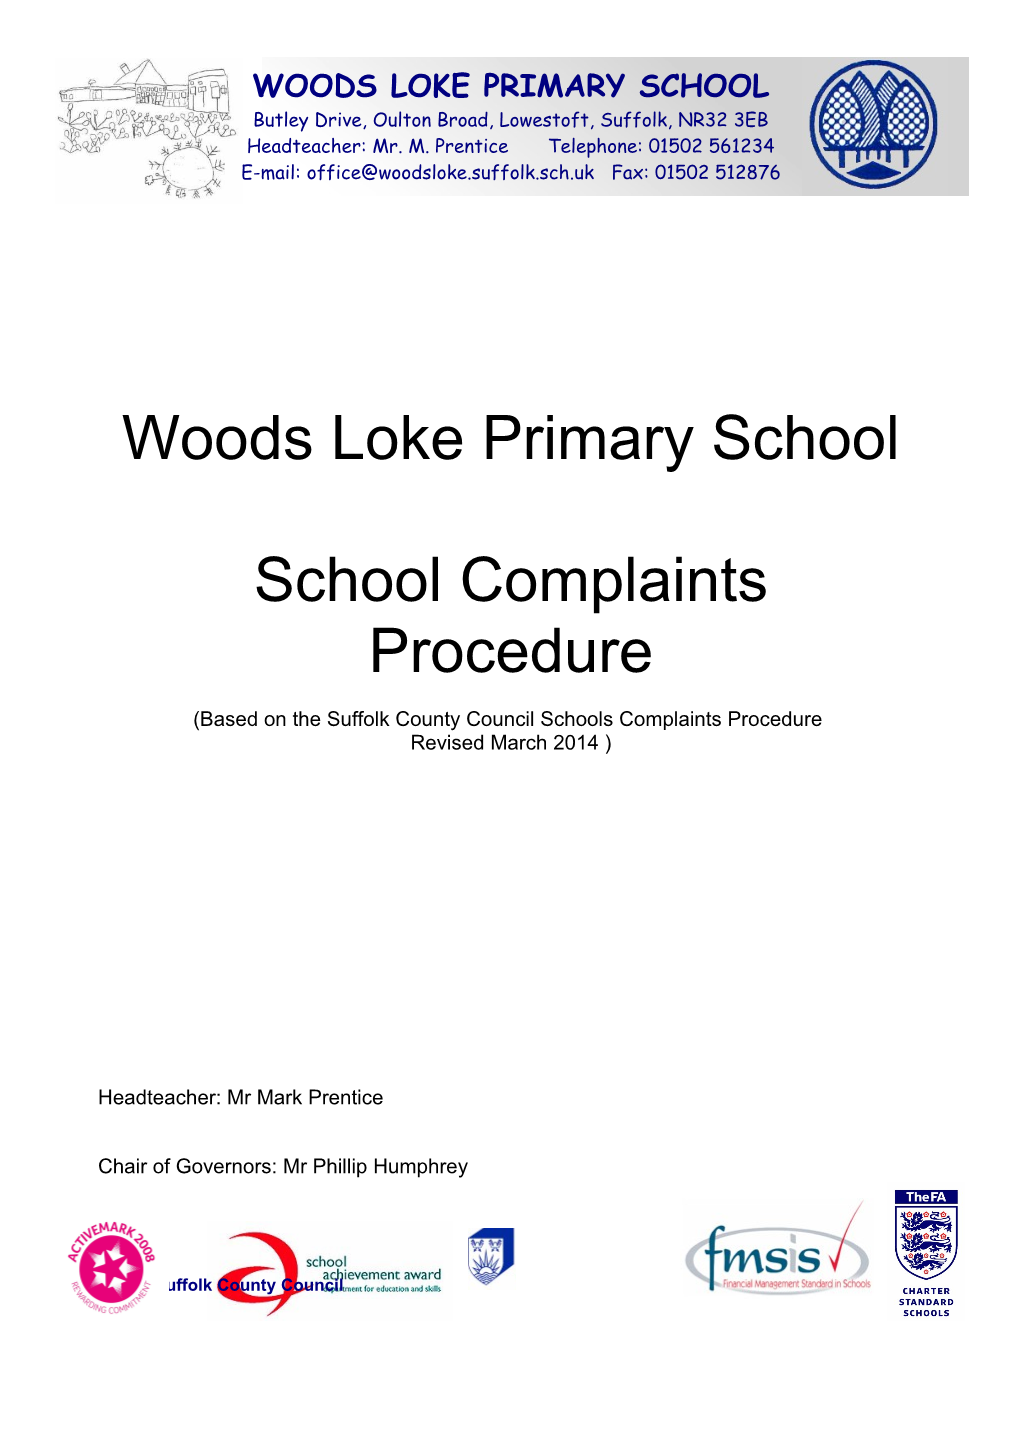 School Complaints Procedure